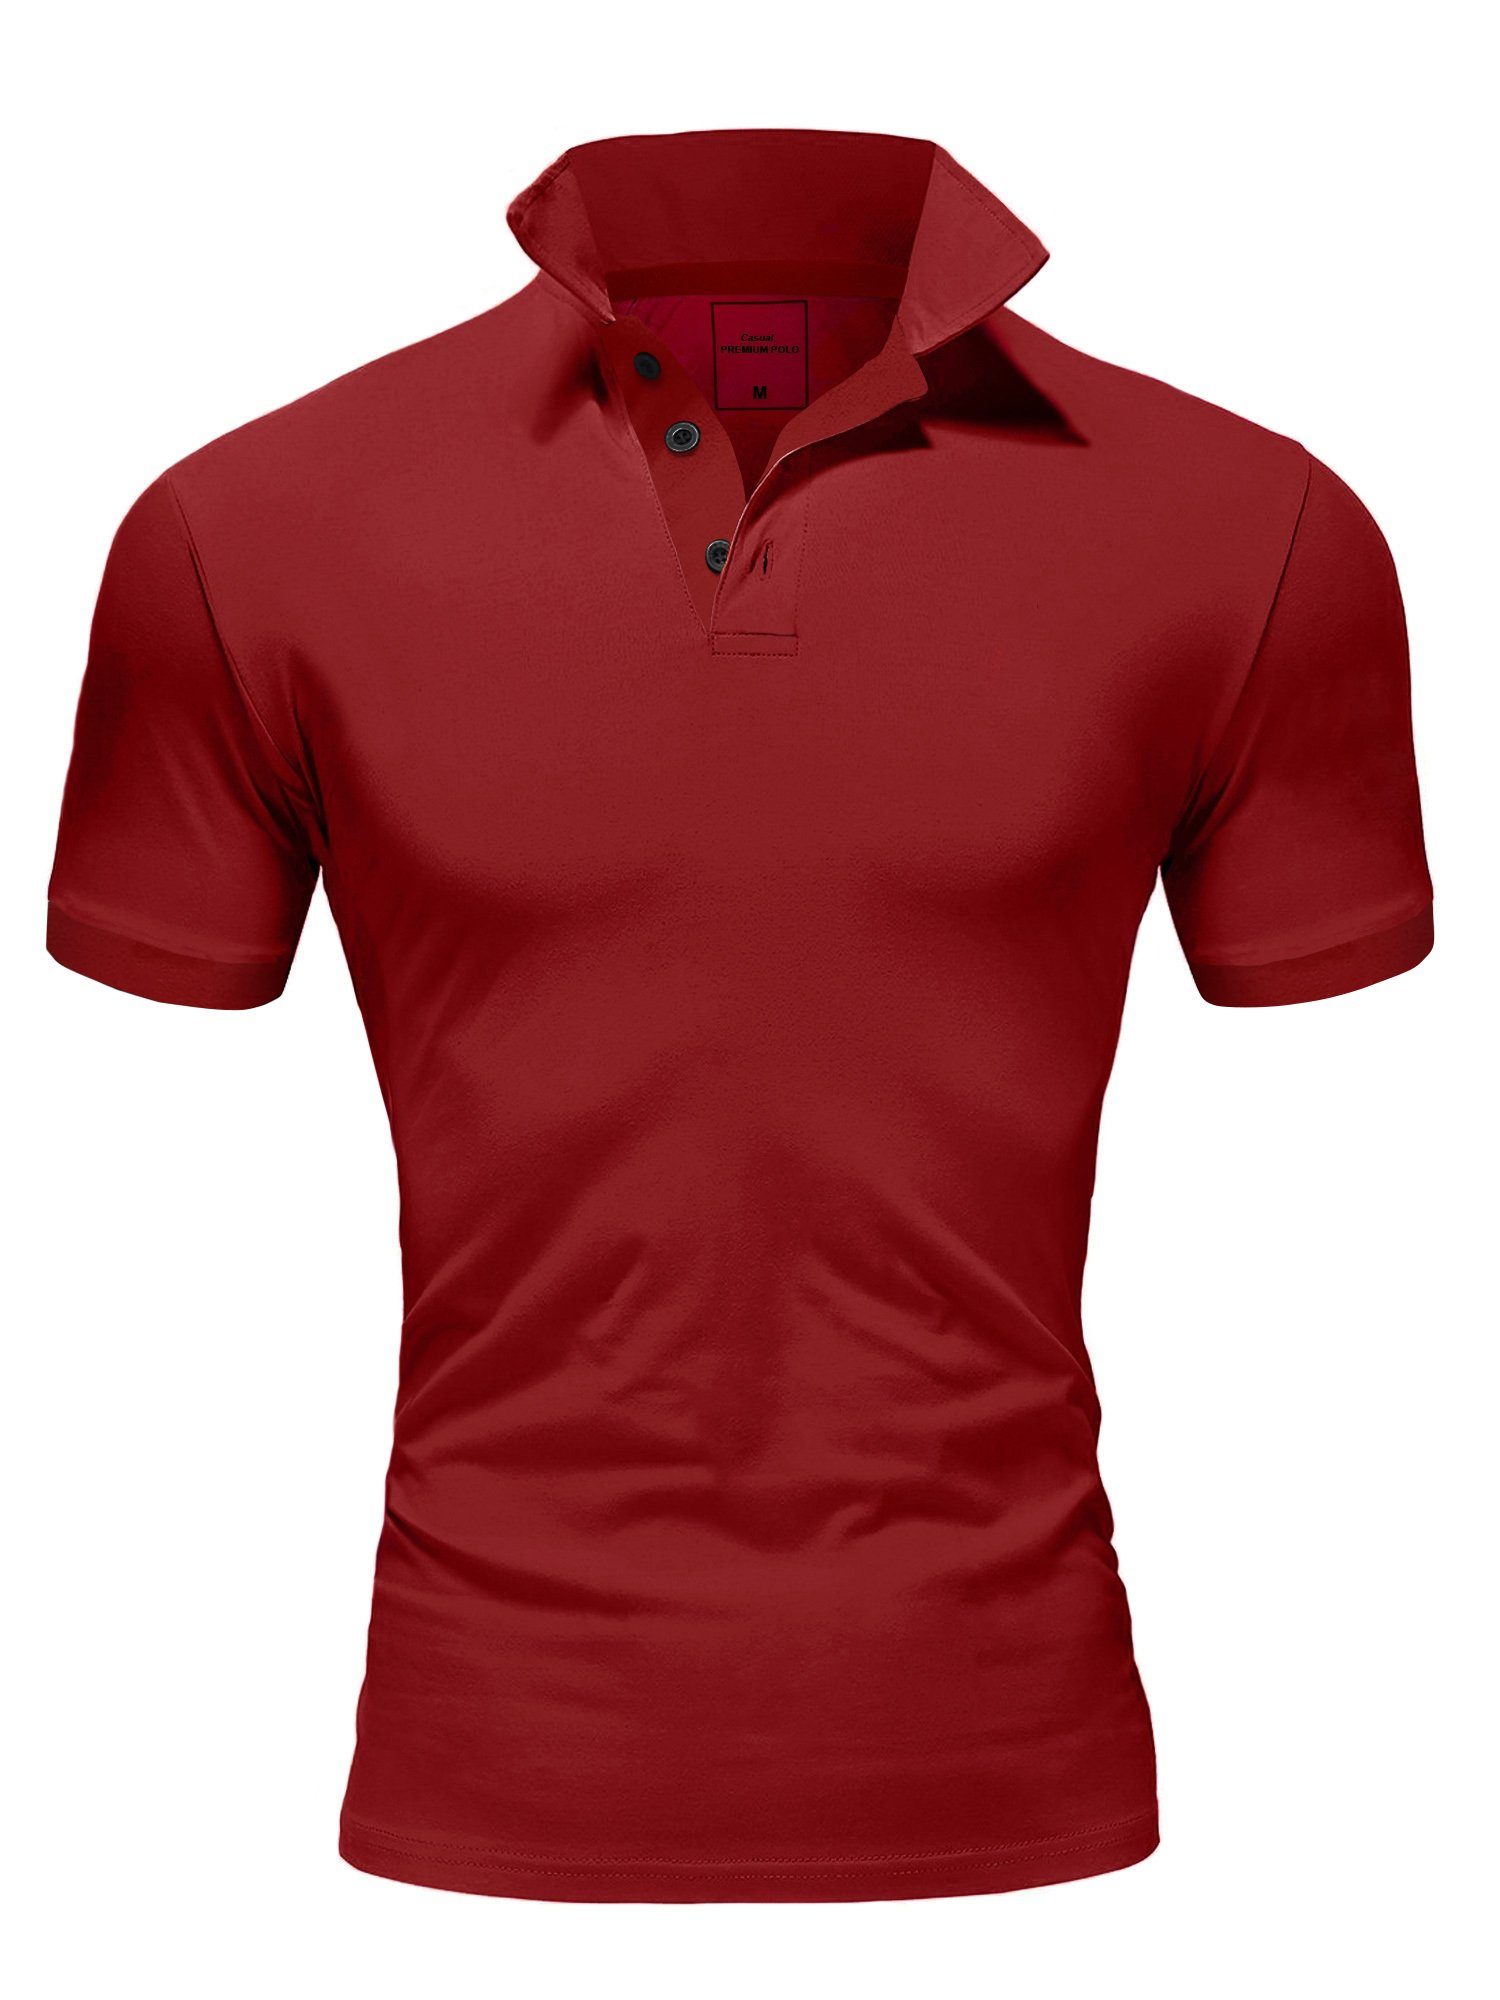 Renner Amaci&Sons Poloshirt Poloshirt Bordeaux Kurzarm MAINE Basic